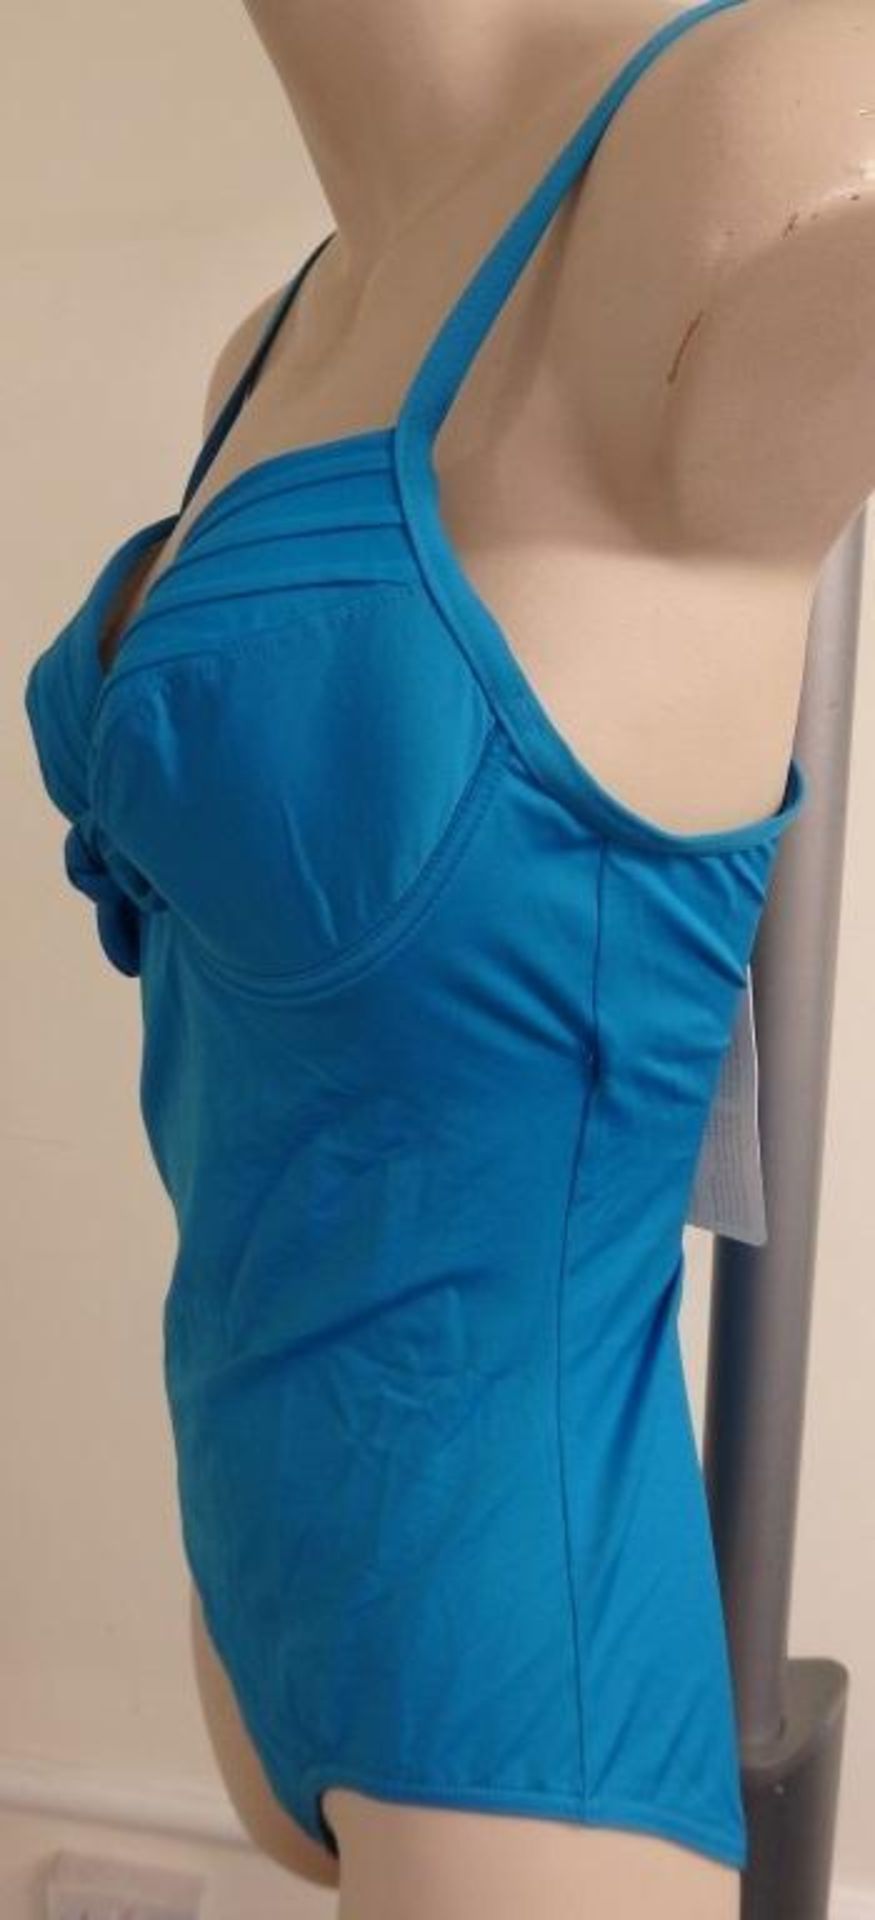 1 x Rasurel - Turquoise -Touquet balconnet Swimsuit - R20232 - Size 2C - UK 32 - Fr 85 - EU/Int 70 - Image 6 of 9